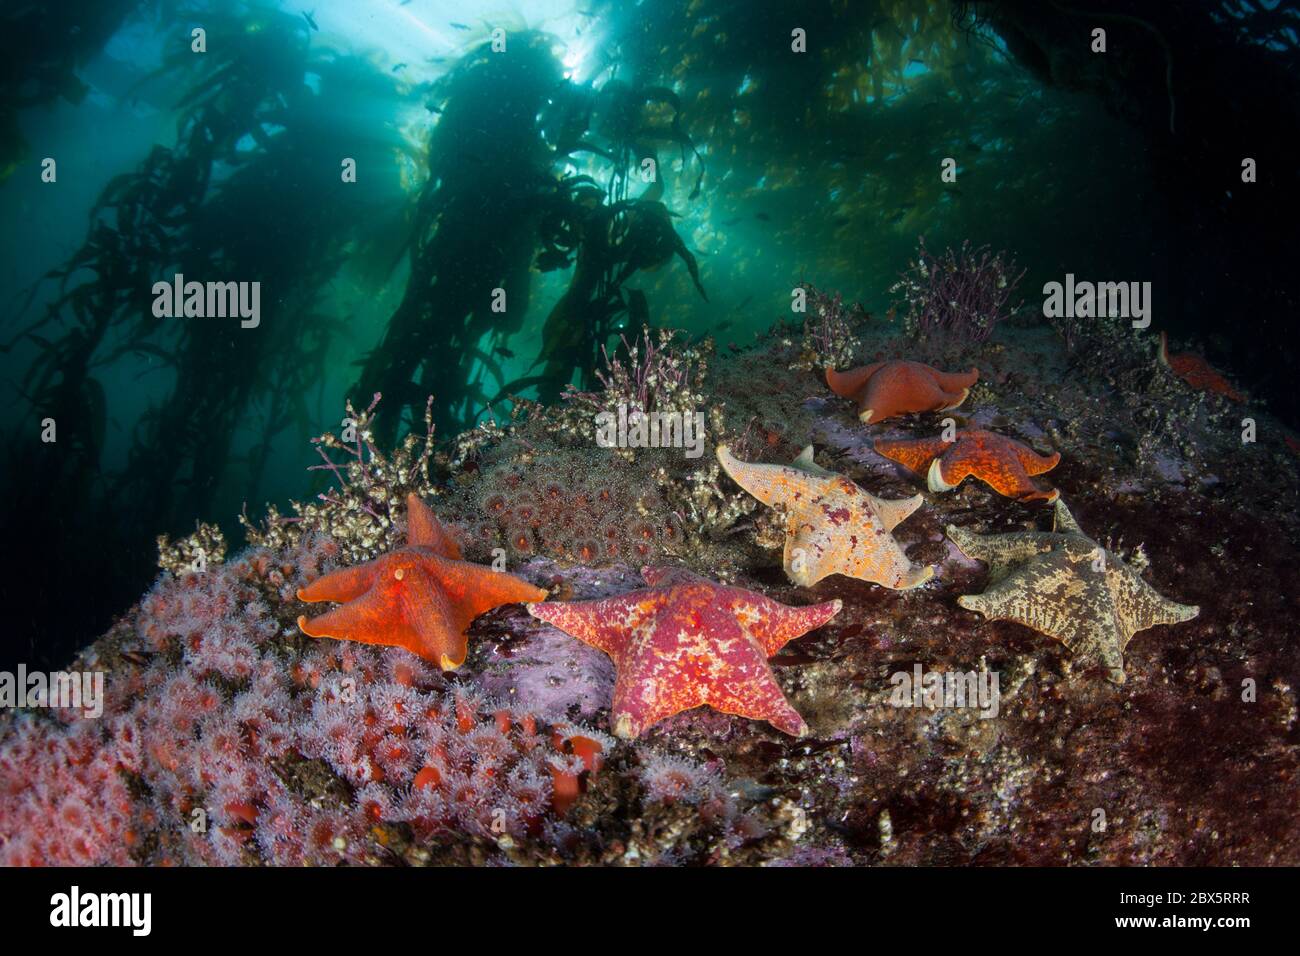 Les poissons-étoiles s'accrochent au fond marin dans une forêt de varech géant, Macrocystis pyrifera. Diverses forêts de varech poussent le long de la côte sauvage de la Californie. Banque D'Images